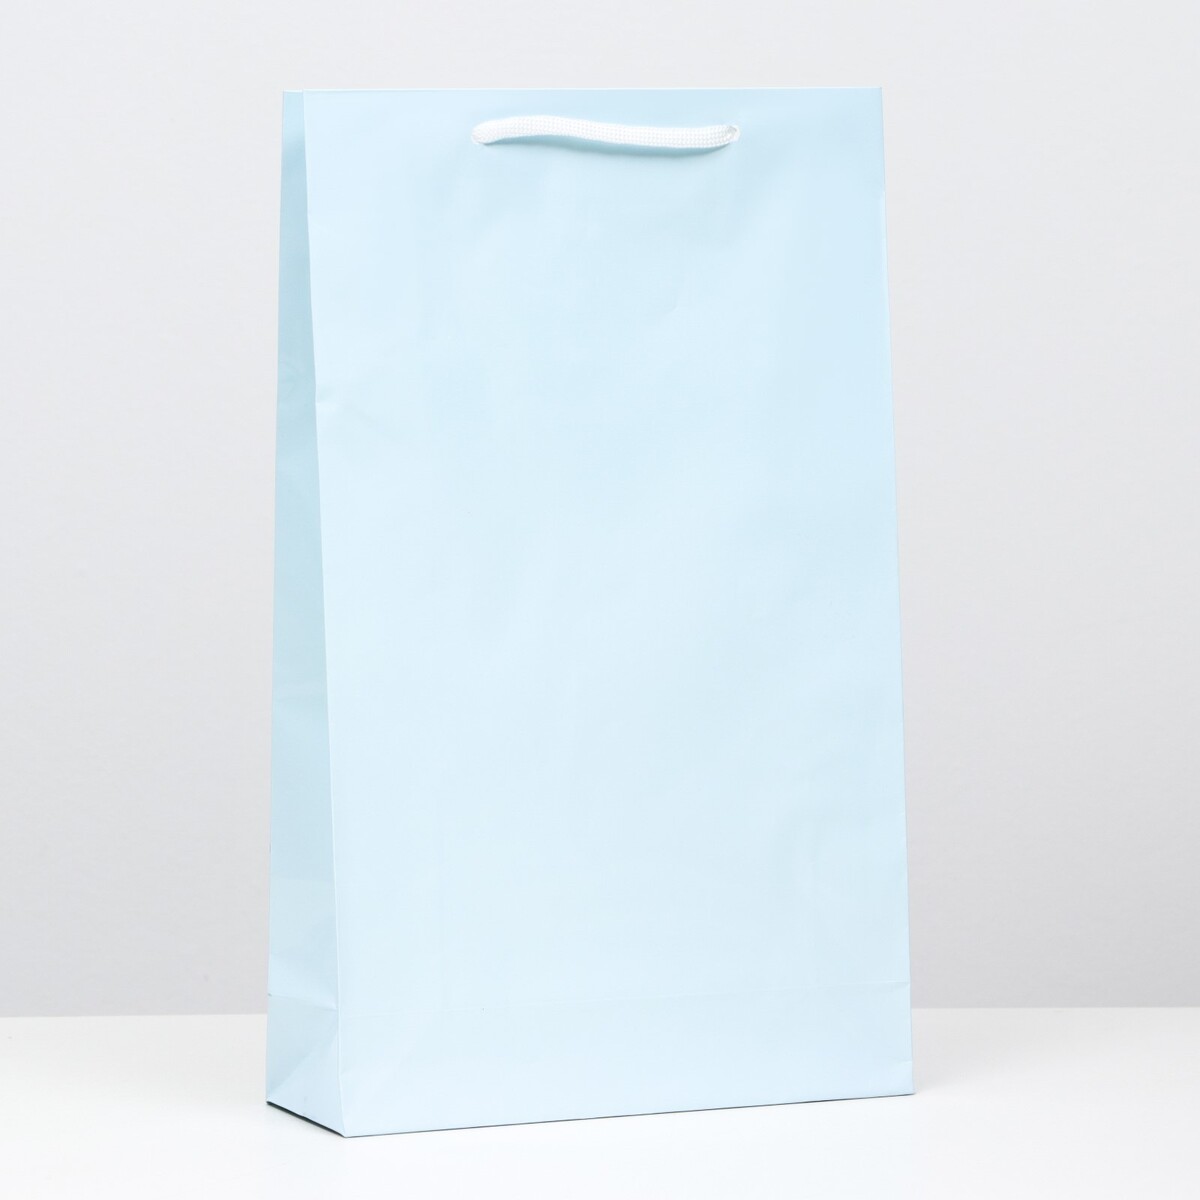 Пакет ламинированный, голубой, 40,5 х 24,8 х 9 см пакет ламинированный голубой 40 5 х 24 8 х 9 см